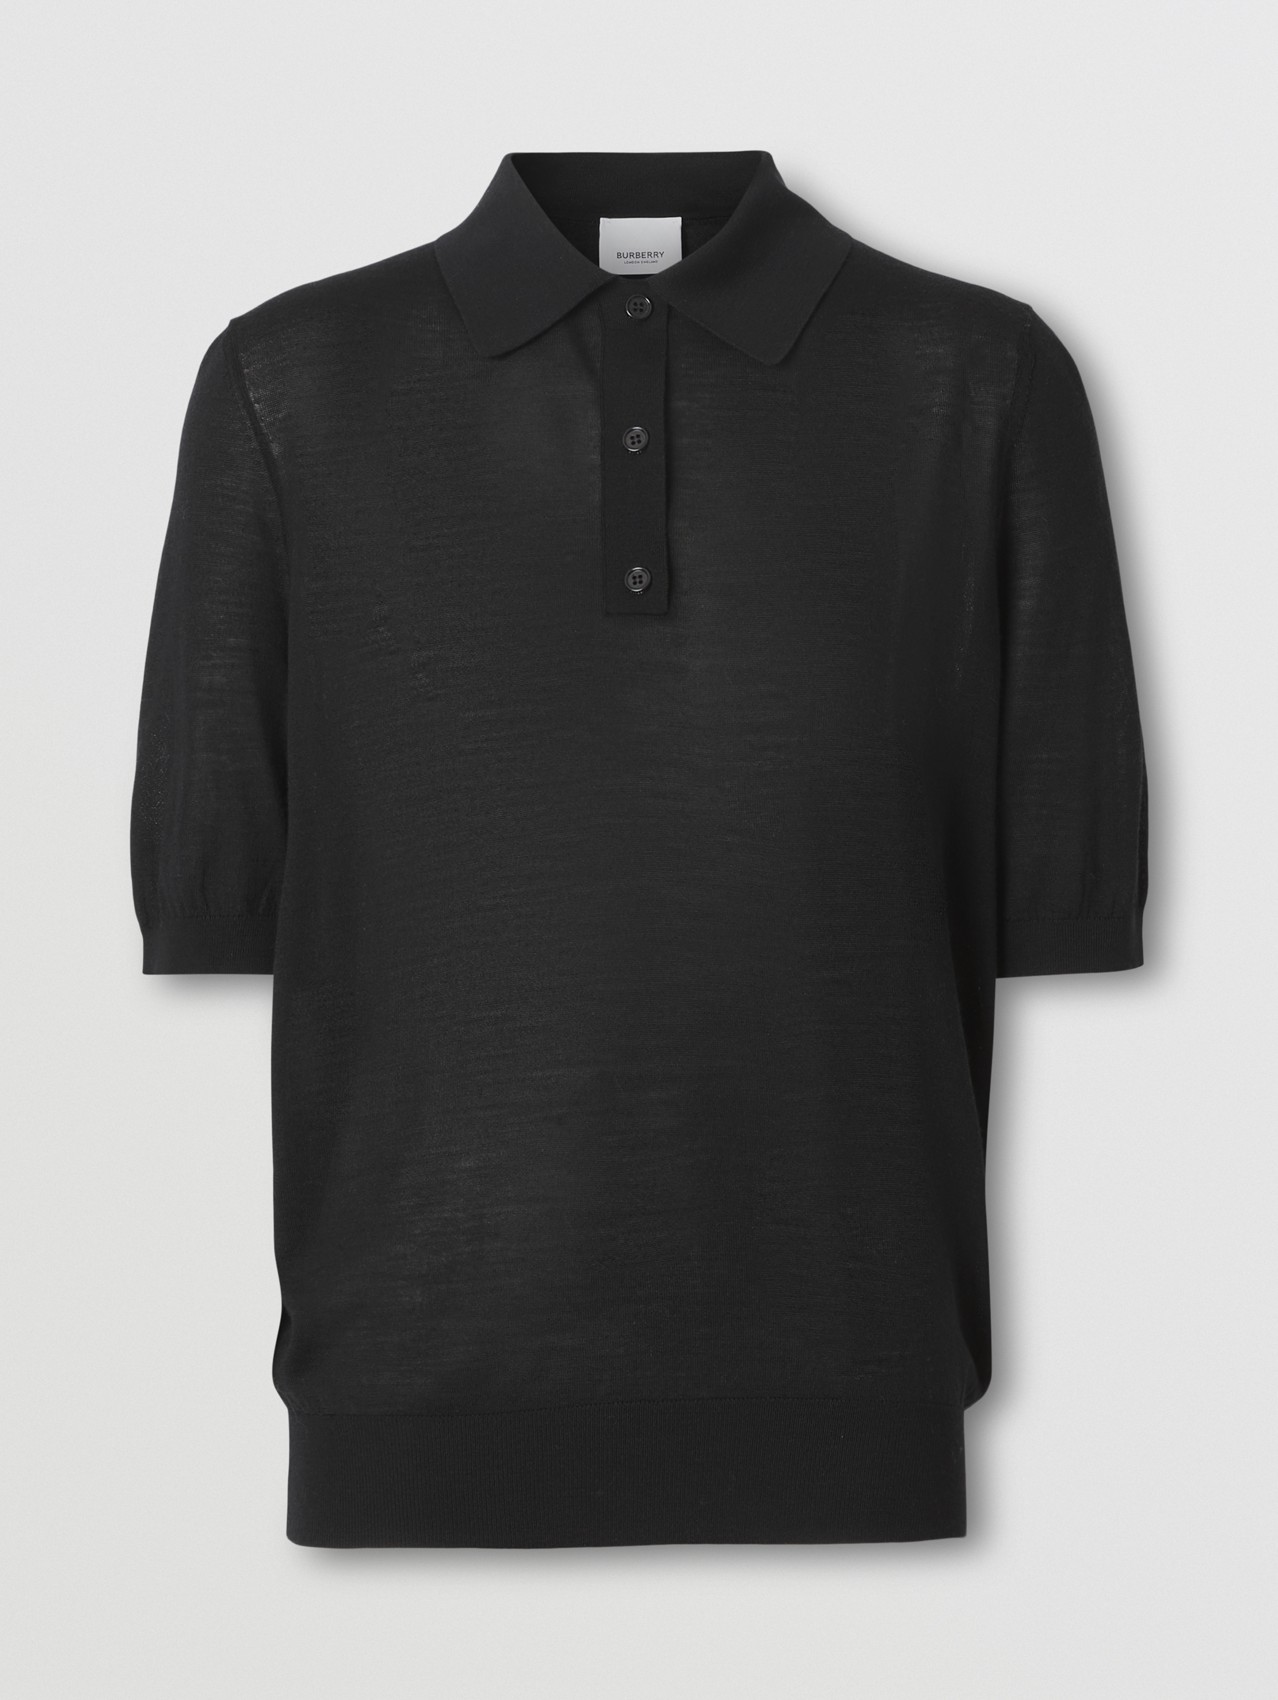 Poloshirt aus Wolle, Seide und Kaschmir mit Monogrammmotiv (Schwarz)